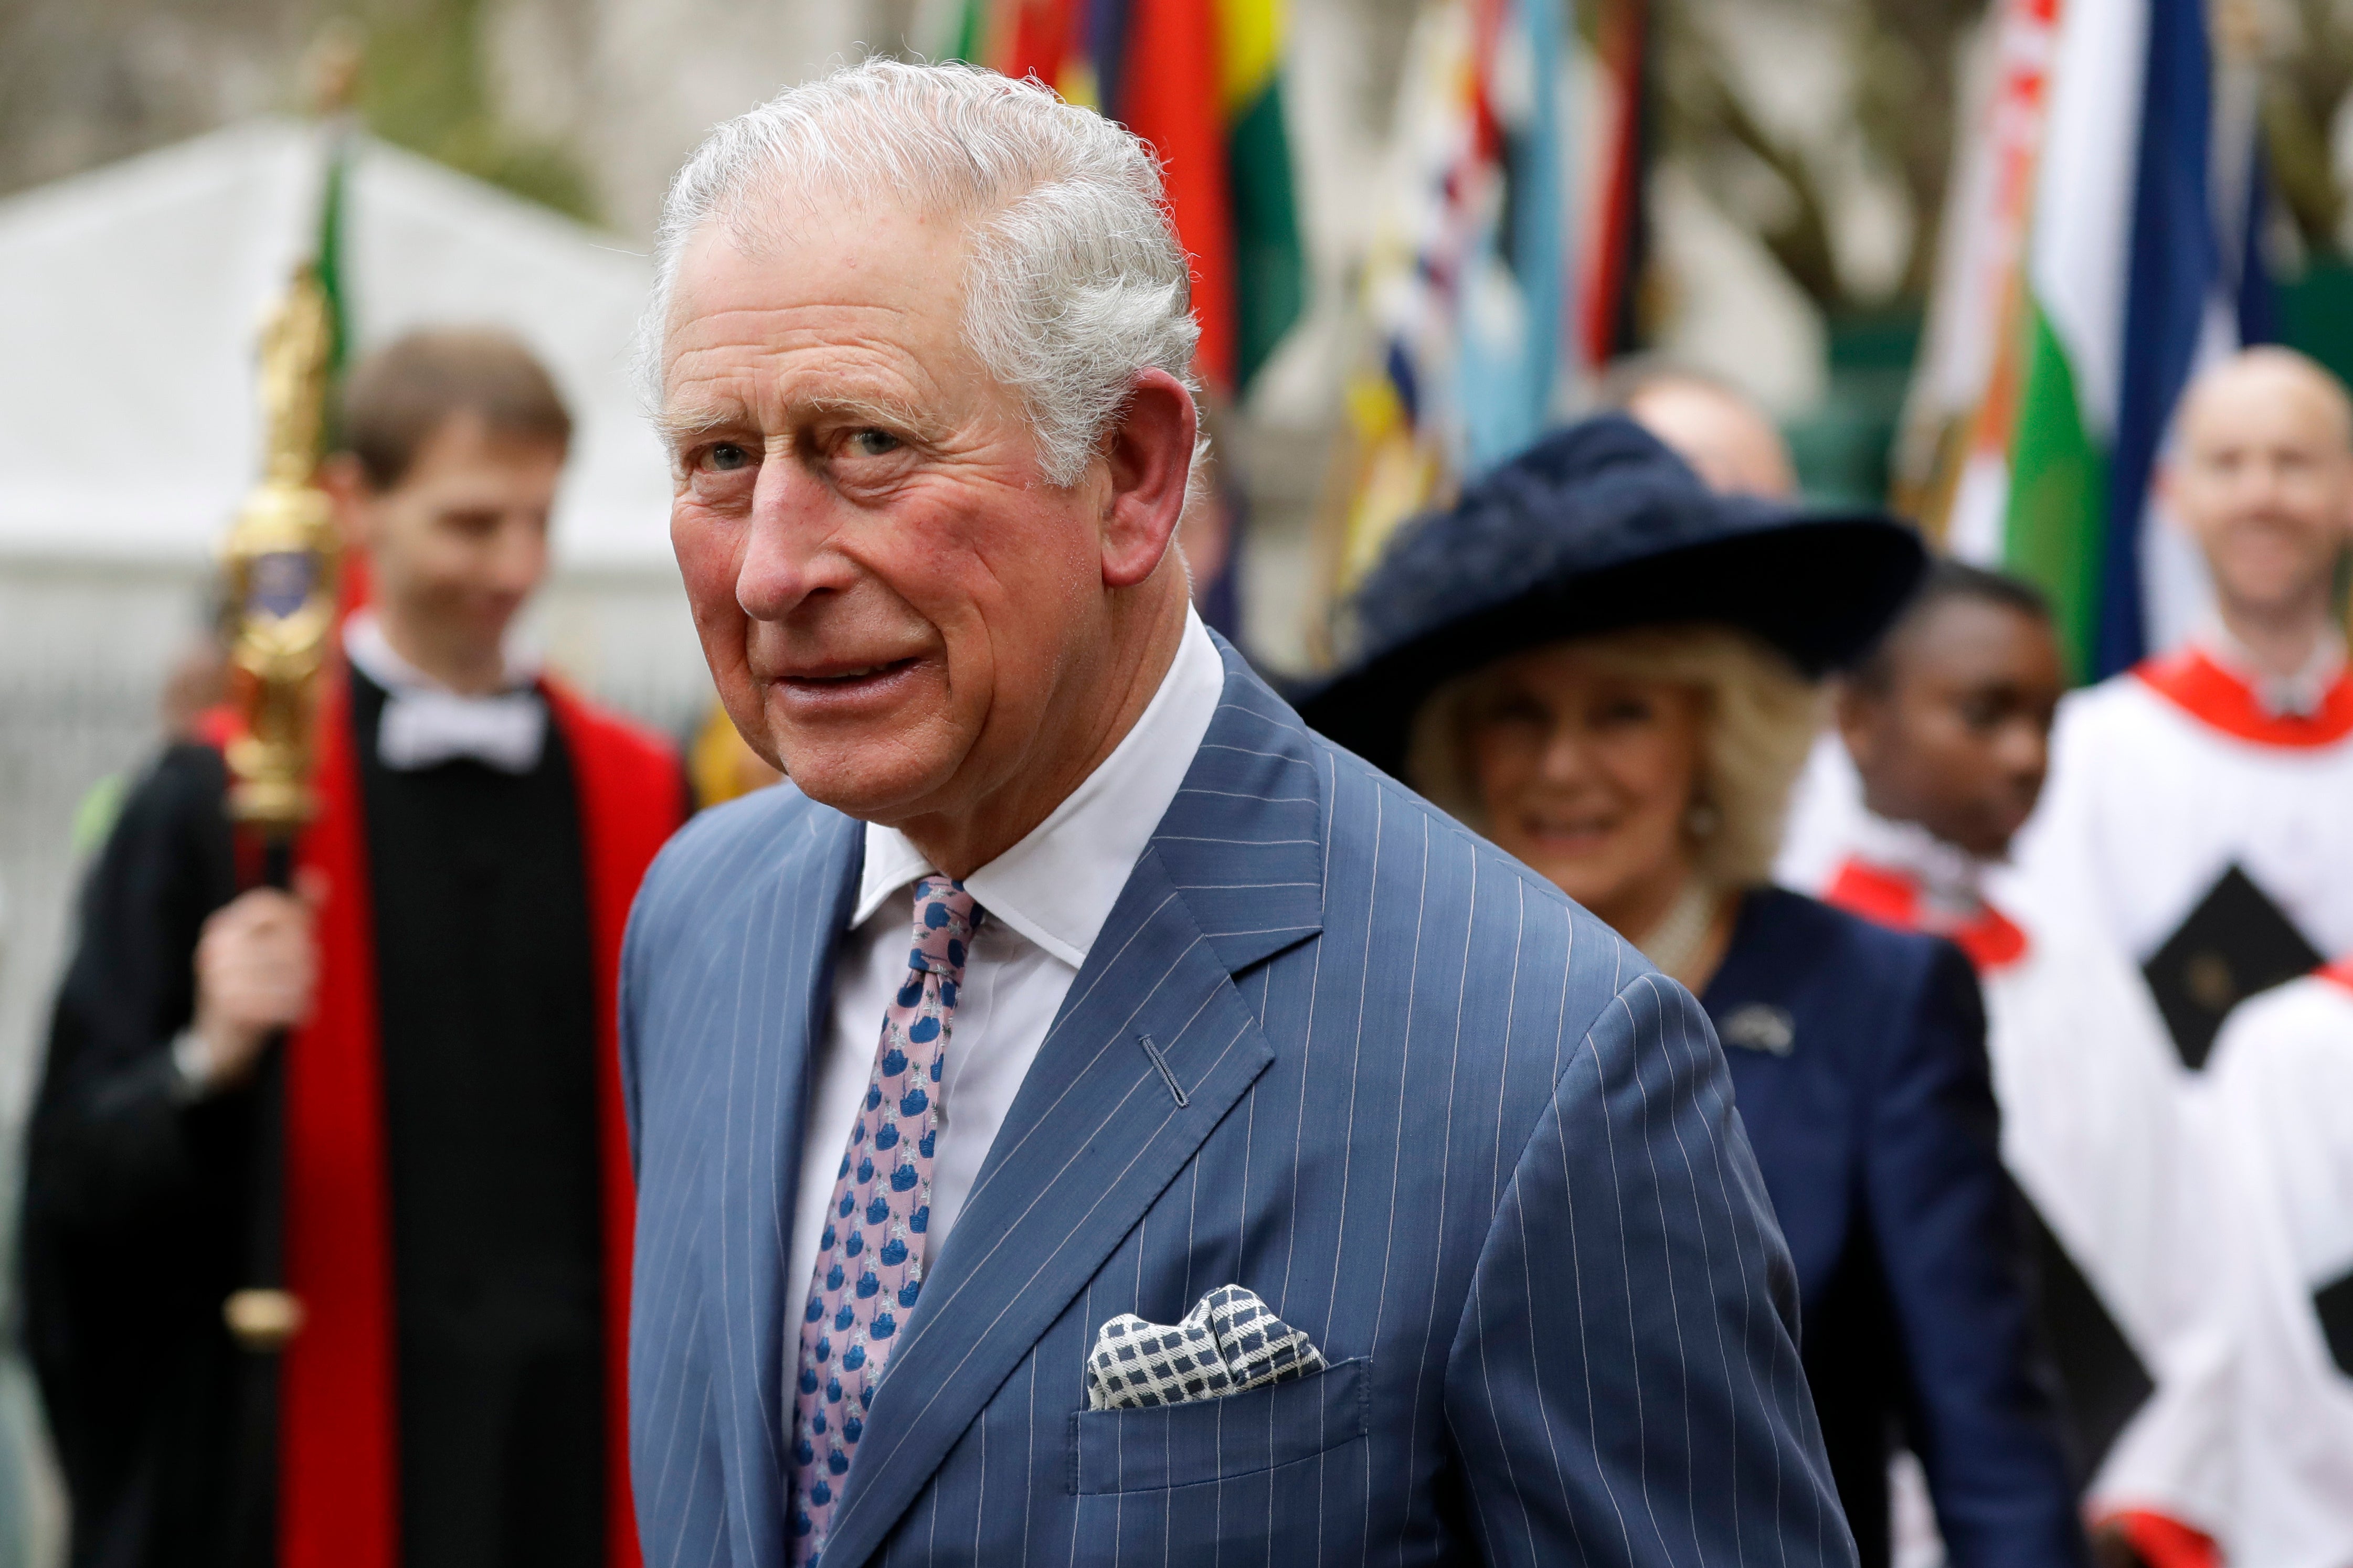 Foto de archivo, 9 de marzo de 2020, del príncipe Carlos de Gran Bretaña y su esposa Camilla, detrás, al salir de una ceremonia en la Abadía de Westminster, Londres. Carlos, príncipe de Gales y heredero del trono del Reino Unido, cumplió 72 años el sábado 14 de noviembre de 2020.&nbsp;